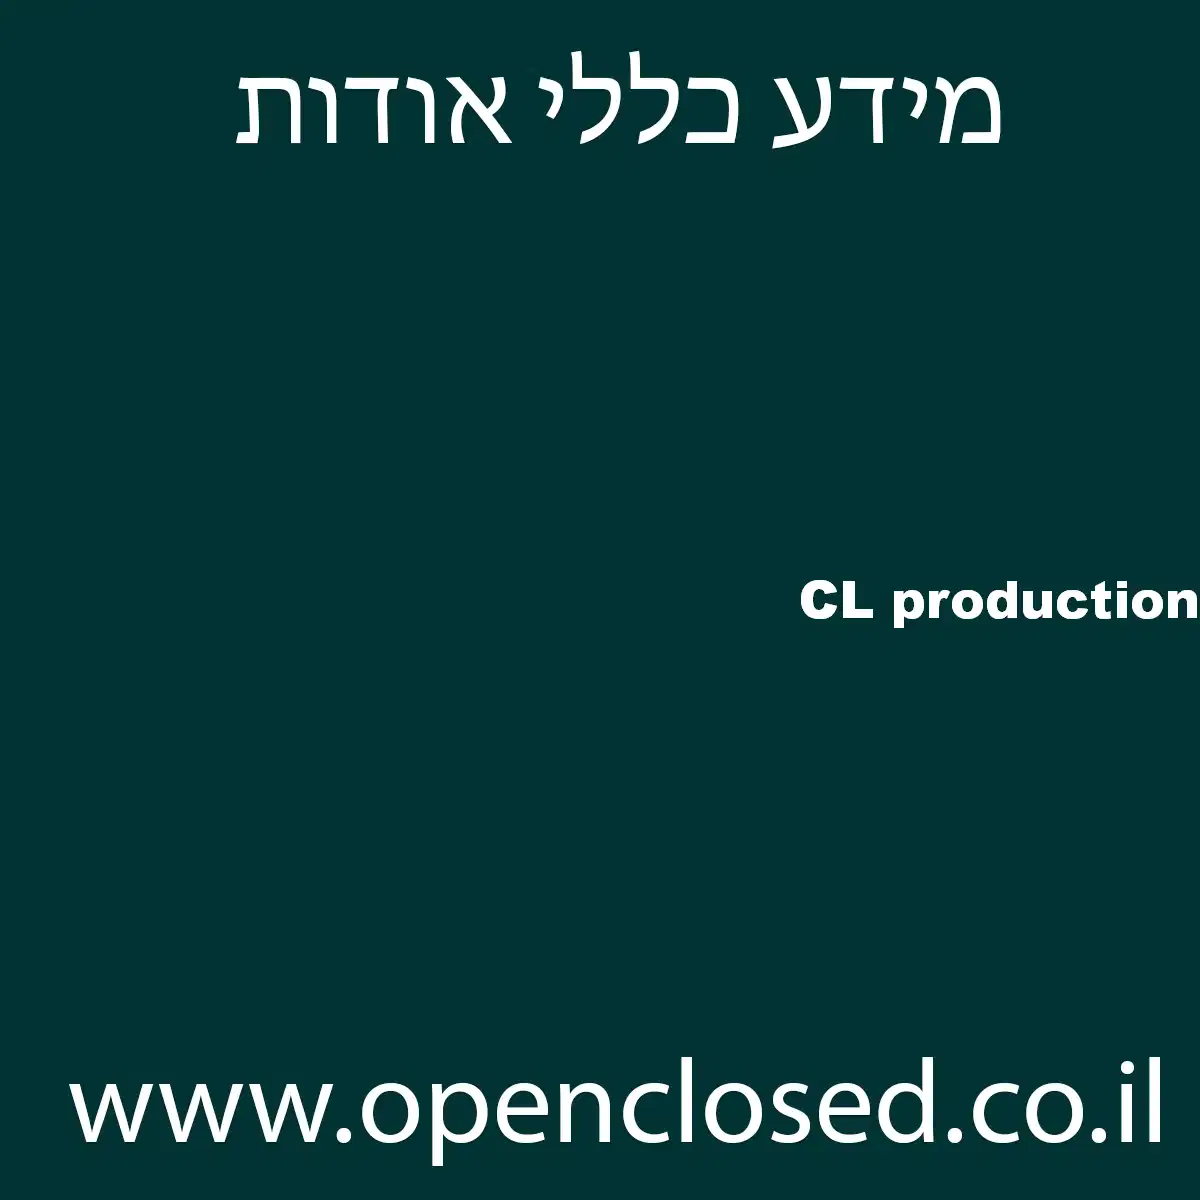 CL production